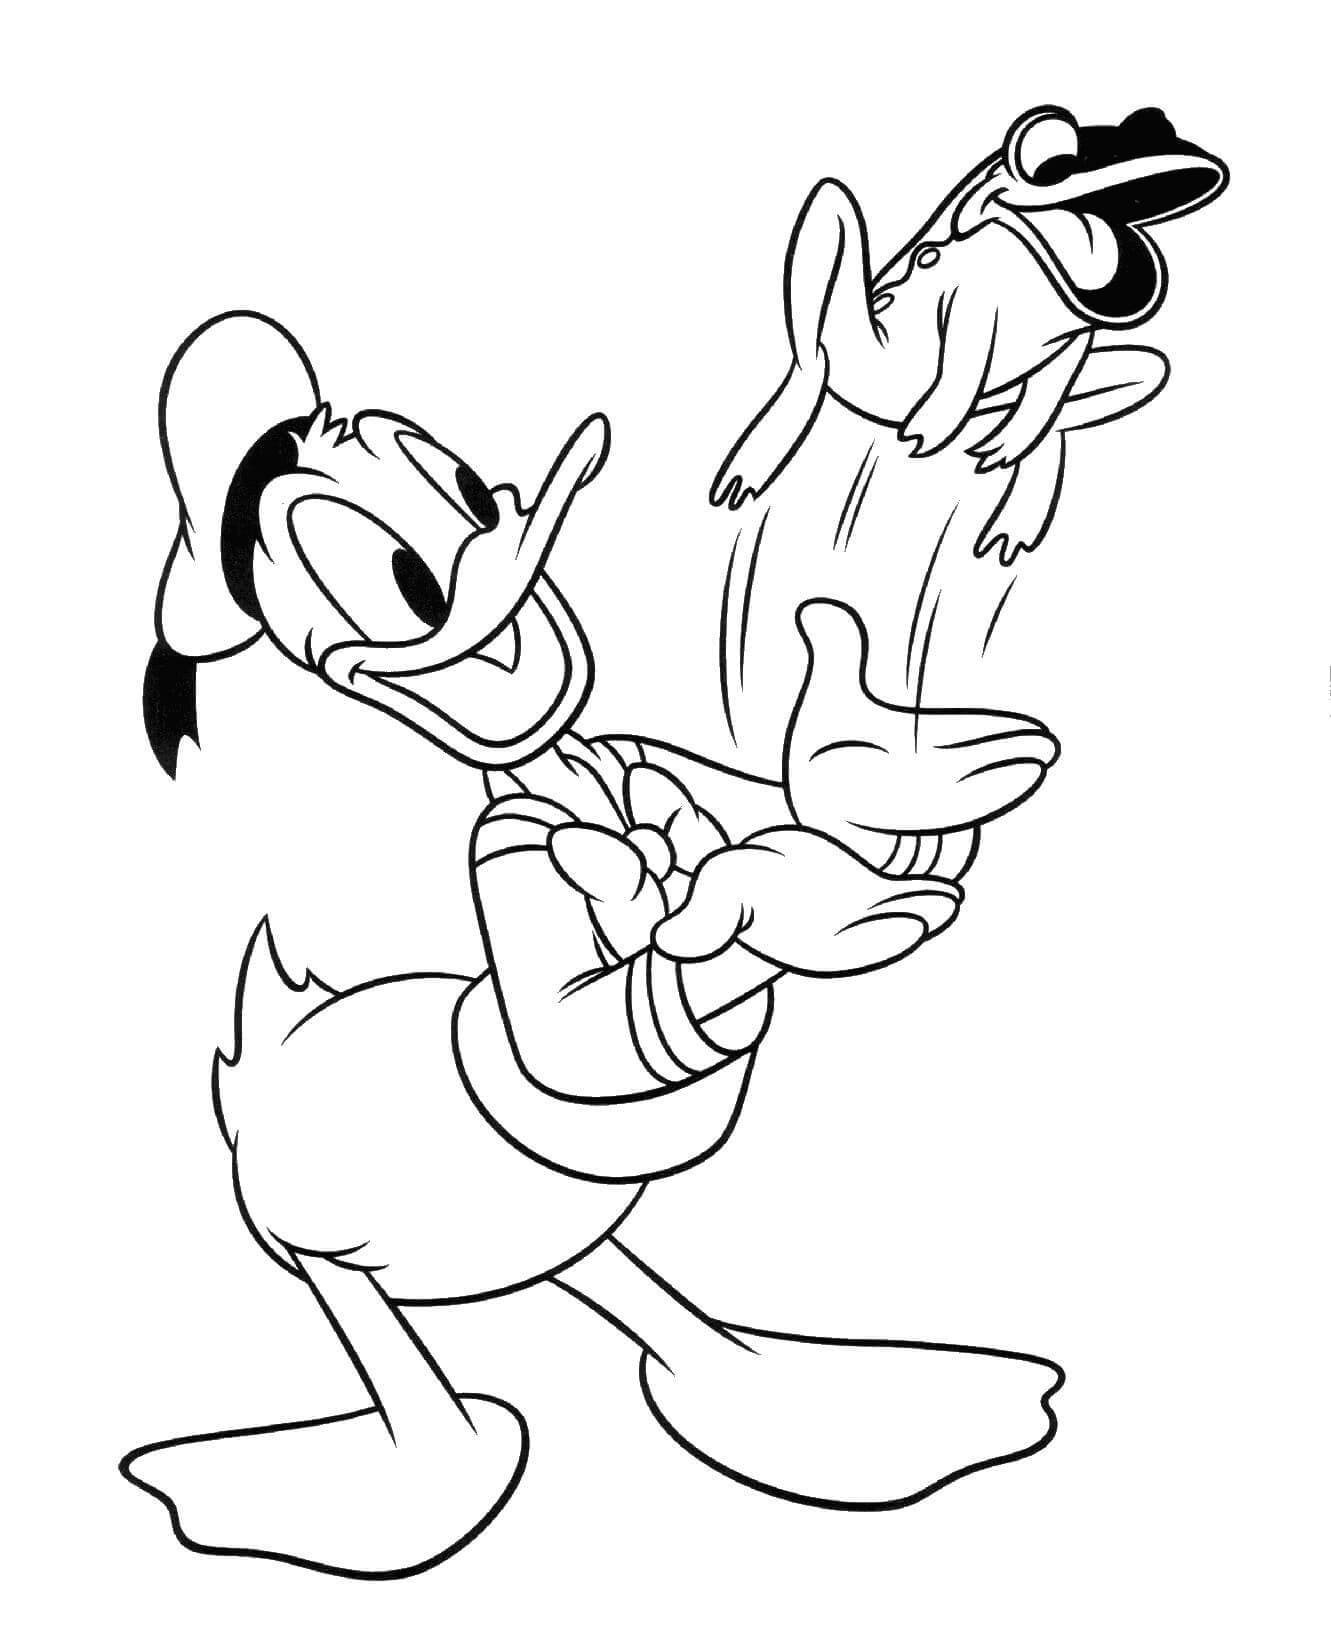 Donald Duck et une Grenouille coloring page